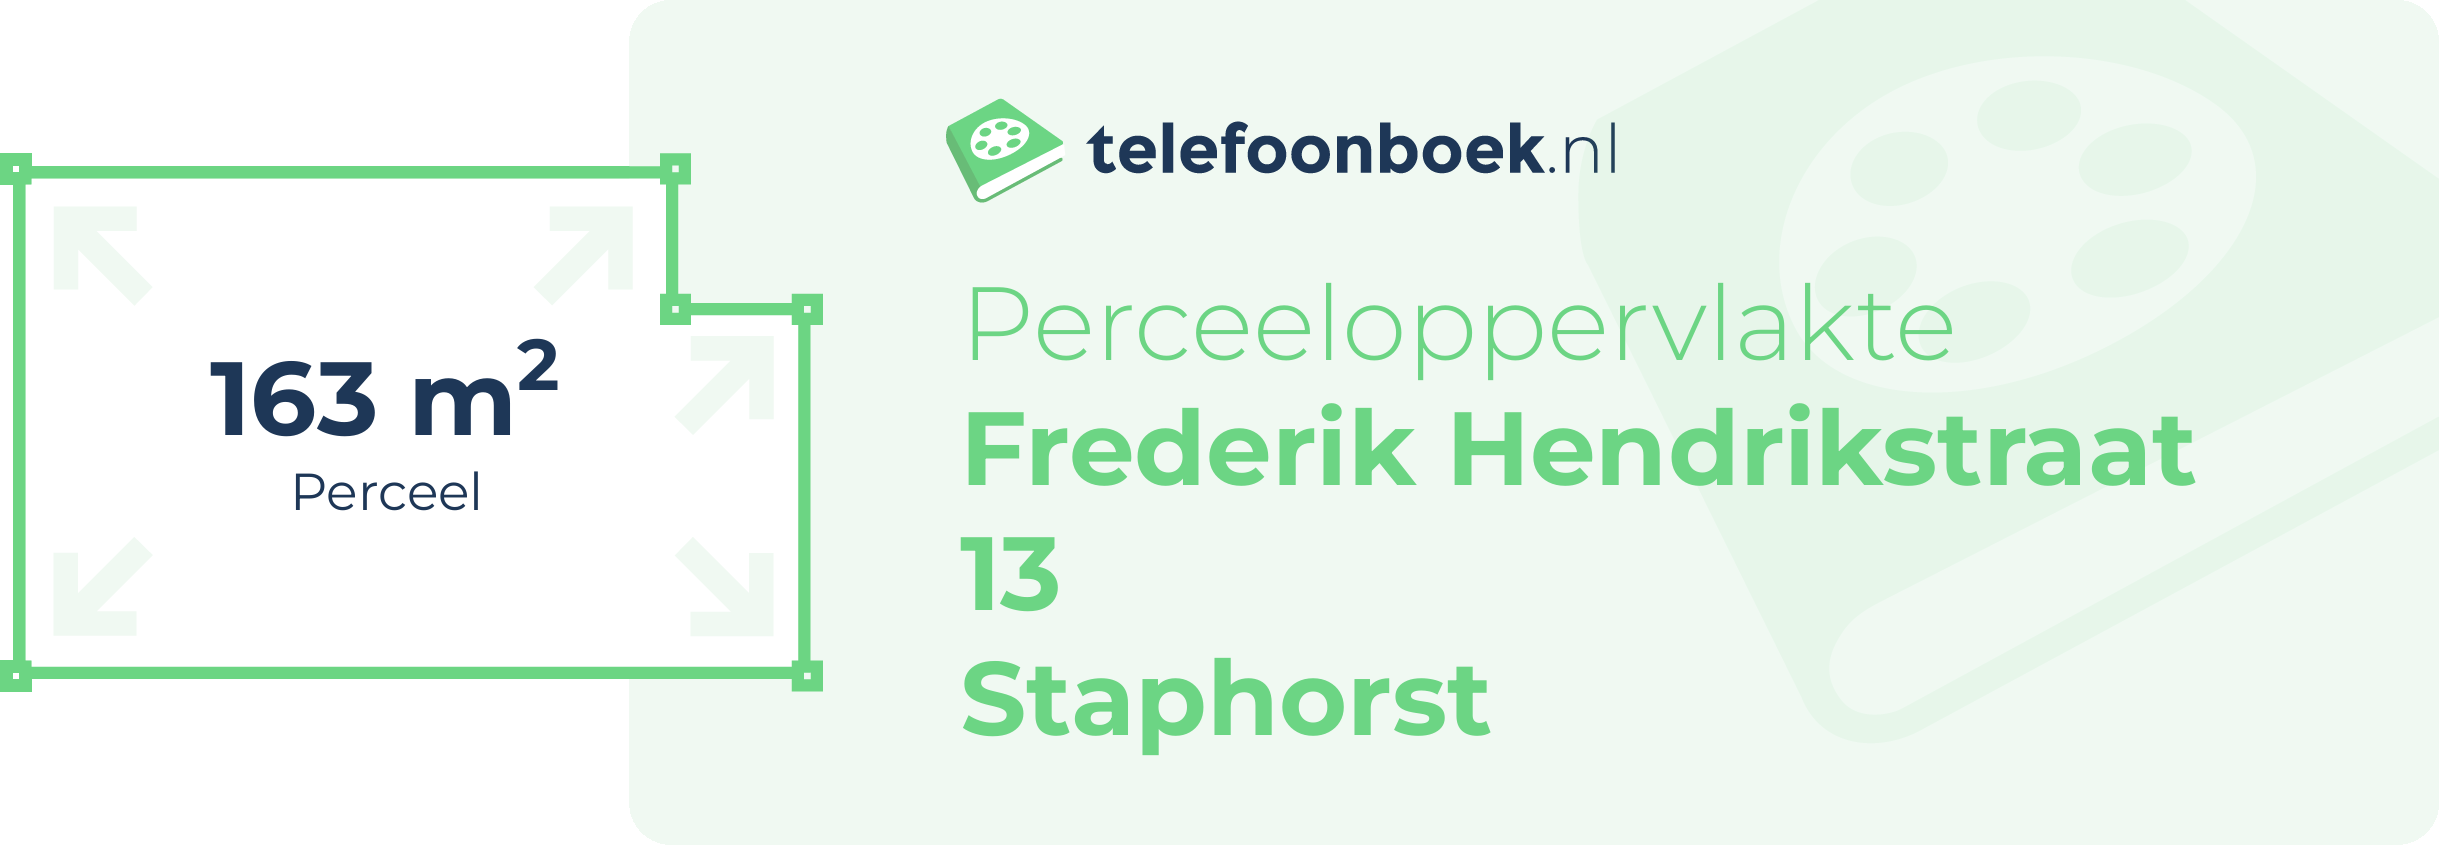 Perceeloppervlakte Frederik Hendrikstraat 13 Staphorst